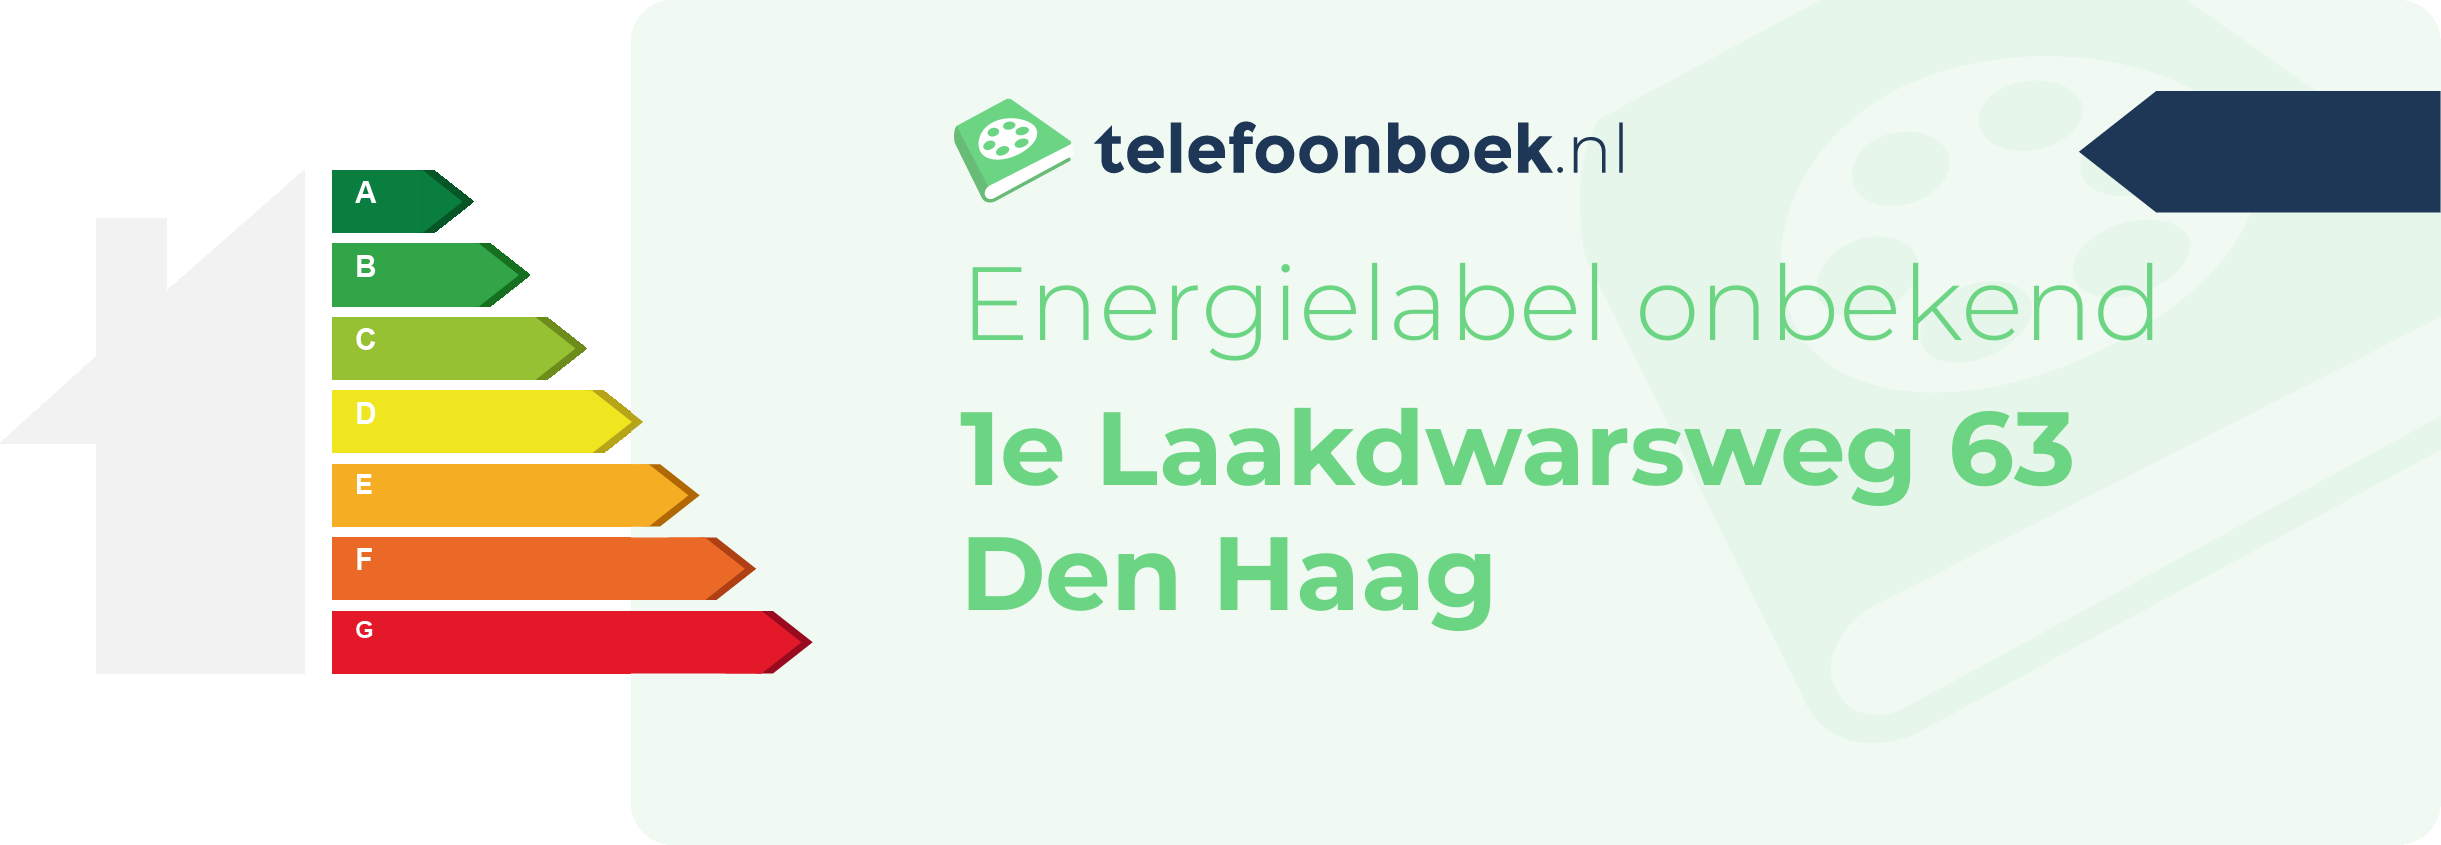 Energielabel 1e Laakdwarsweg 63 Den Haag